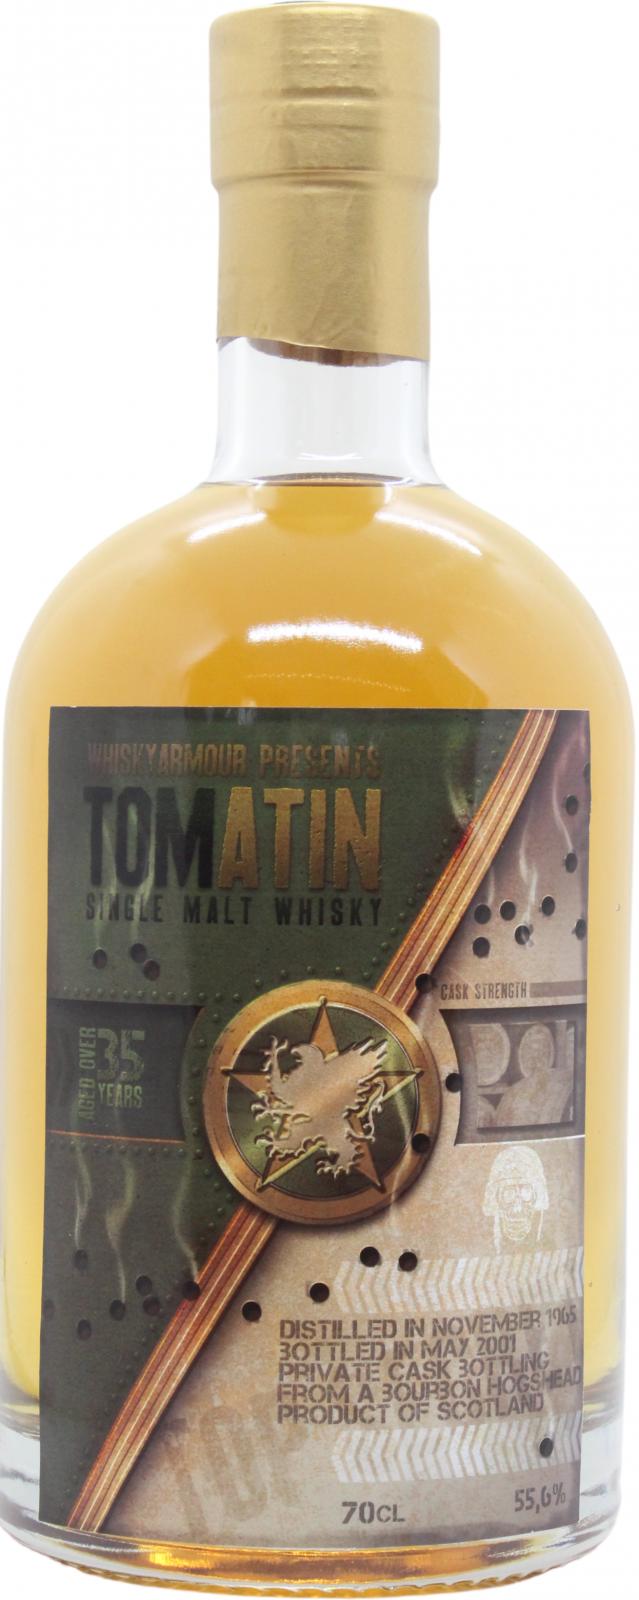 Tomatin 1965 UD Whiskyarmour Bourbon Hogshead Private Bottling 55.6% 700ml